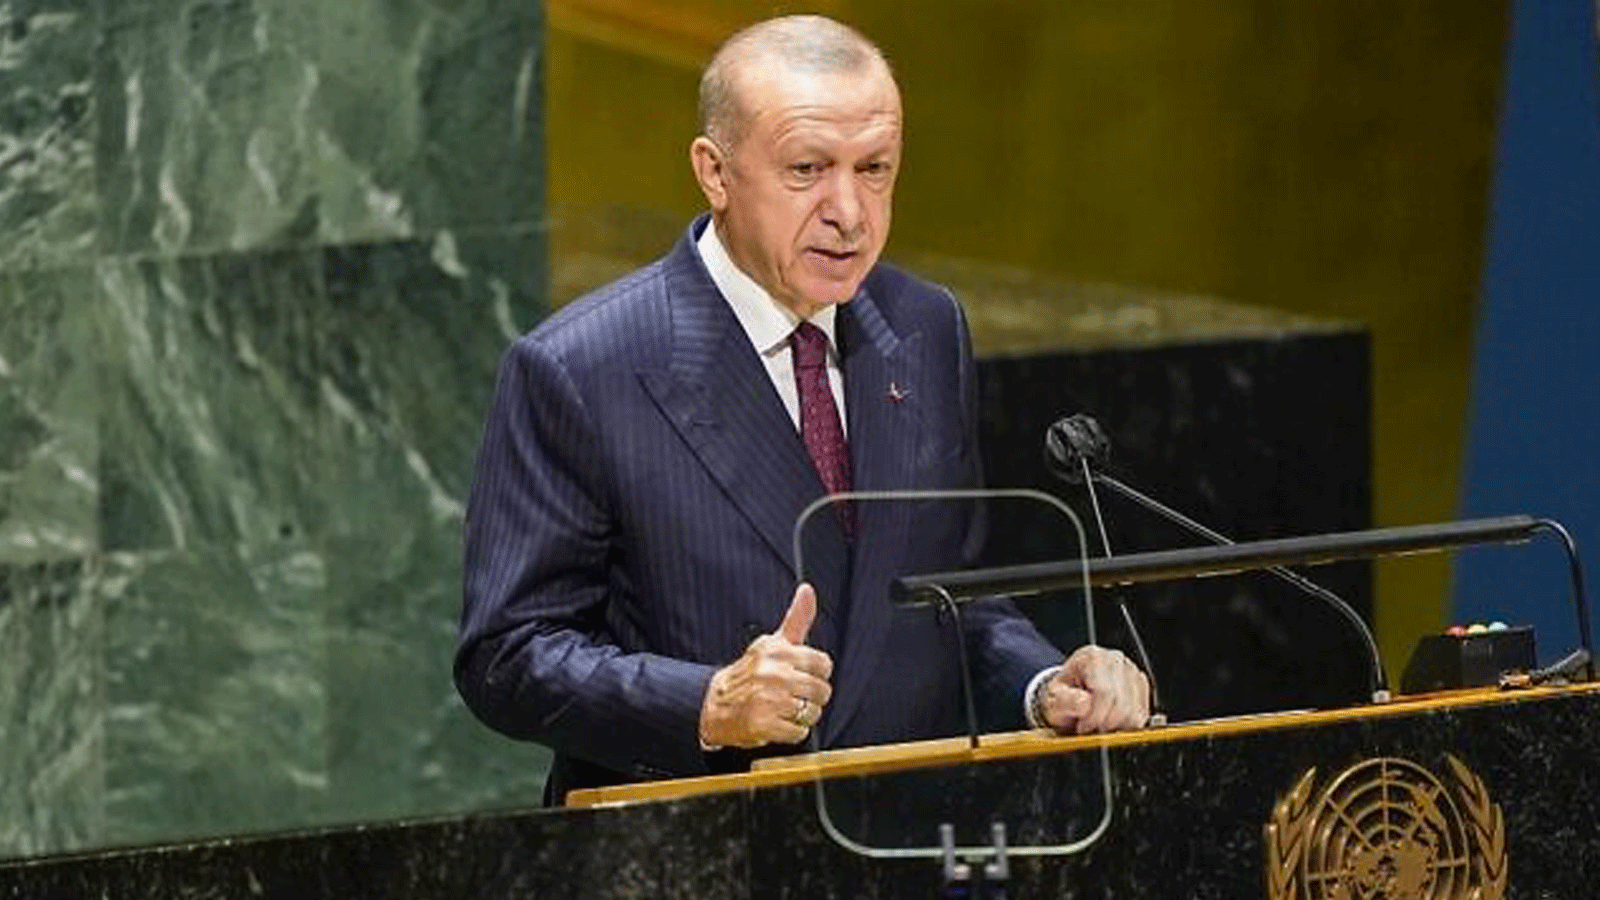  الرئيس التركي رجب طيب إردوغان يتحدث خلال التجمع السنوي في مدينة نيويورك للدورة 76 للجمعية العامة للأمم المتحدة، في 21 أيلول/ سبتمبر 2021.